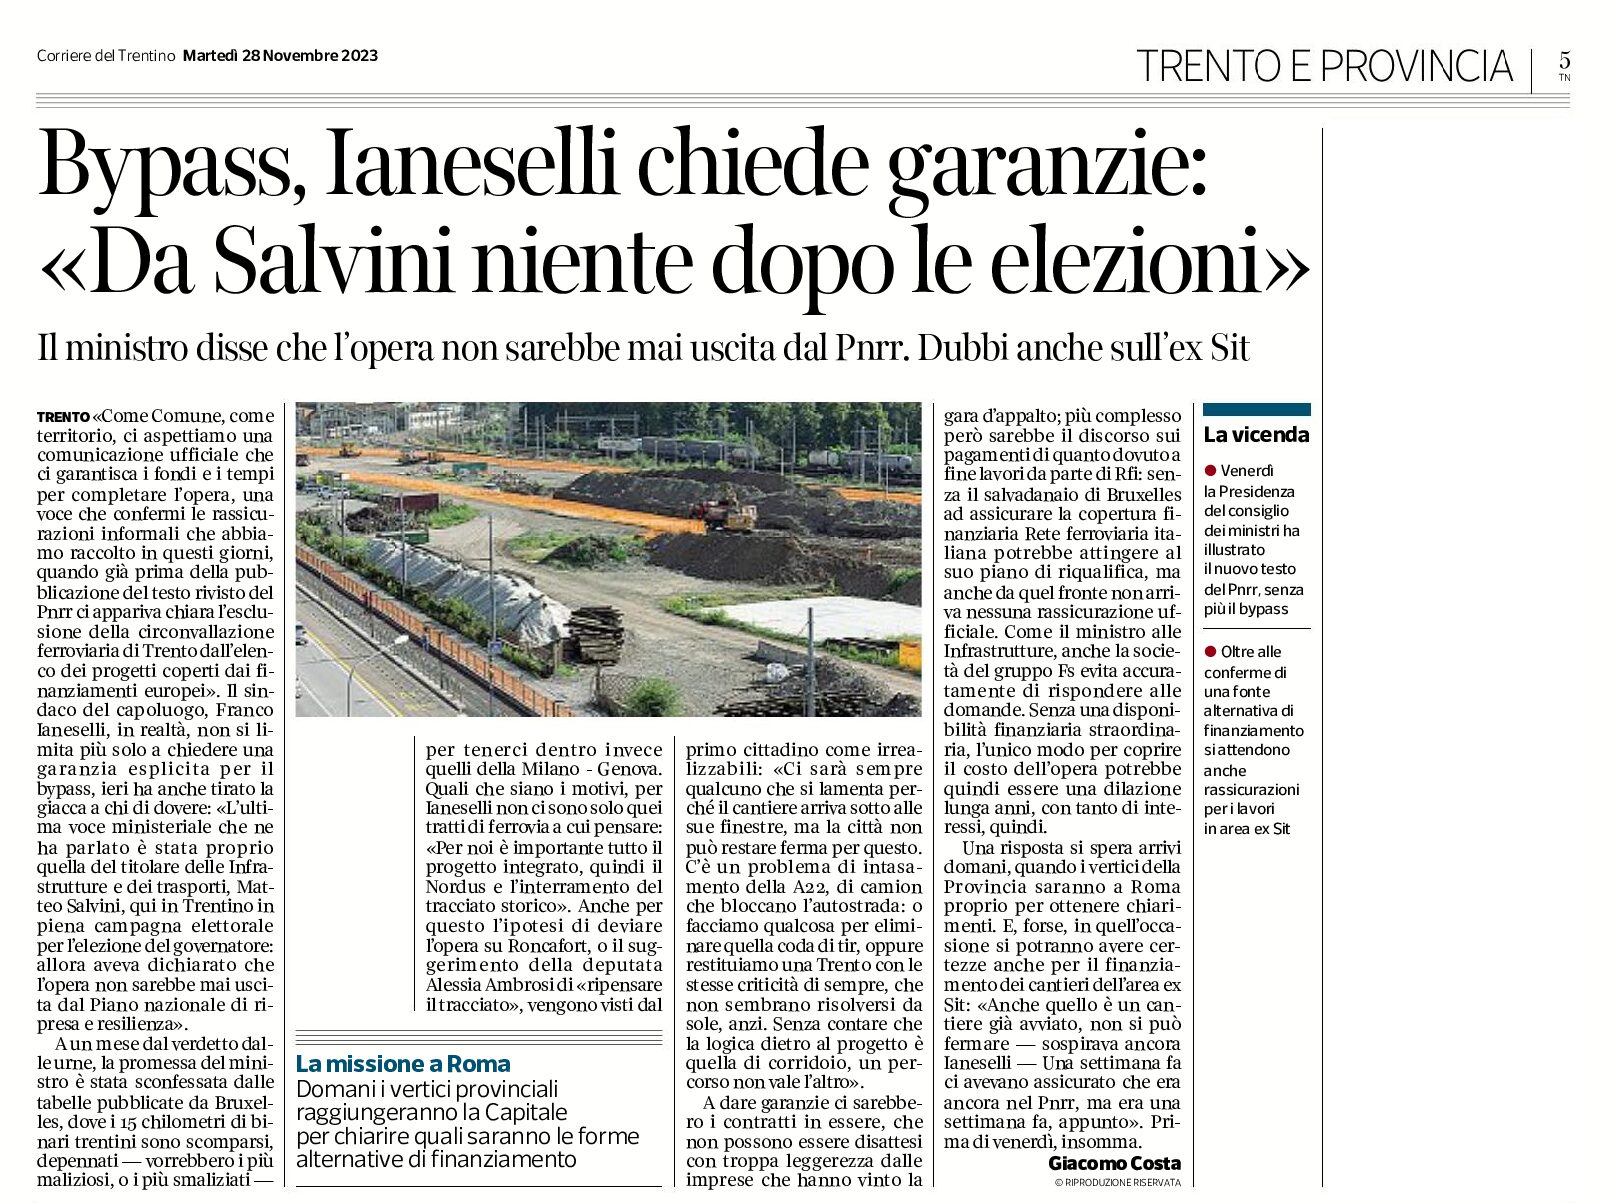 Trento, bypass: Ianeselli chiede garanzie “da Salvini niente dopo le elezioni”